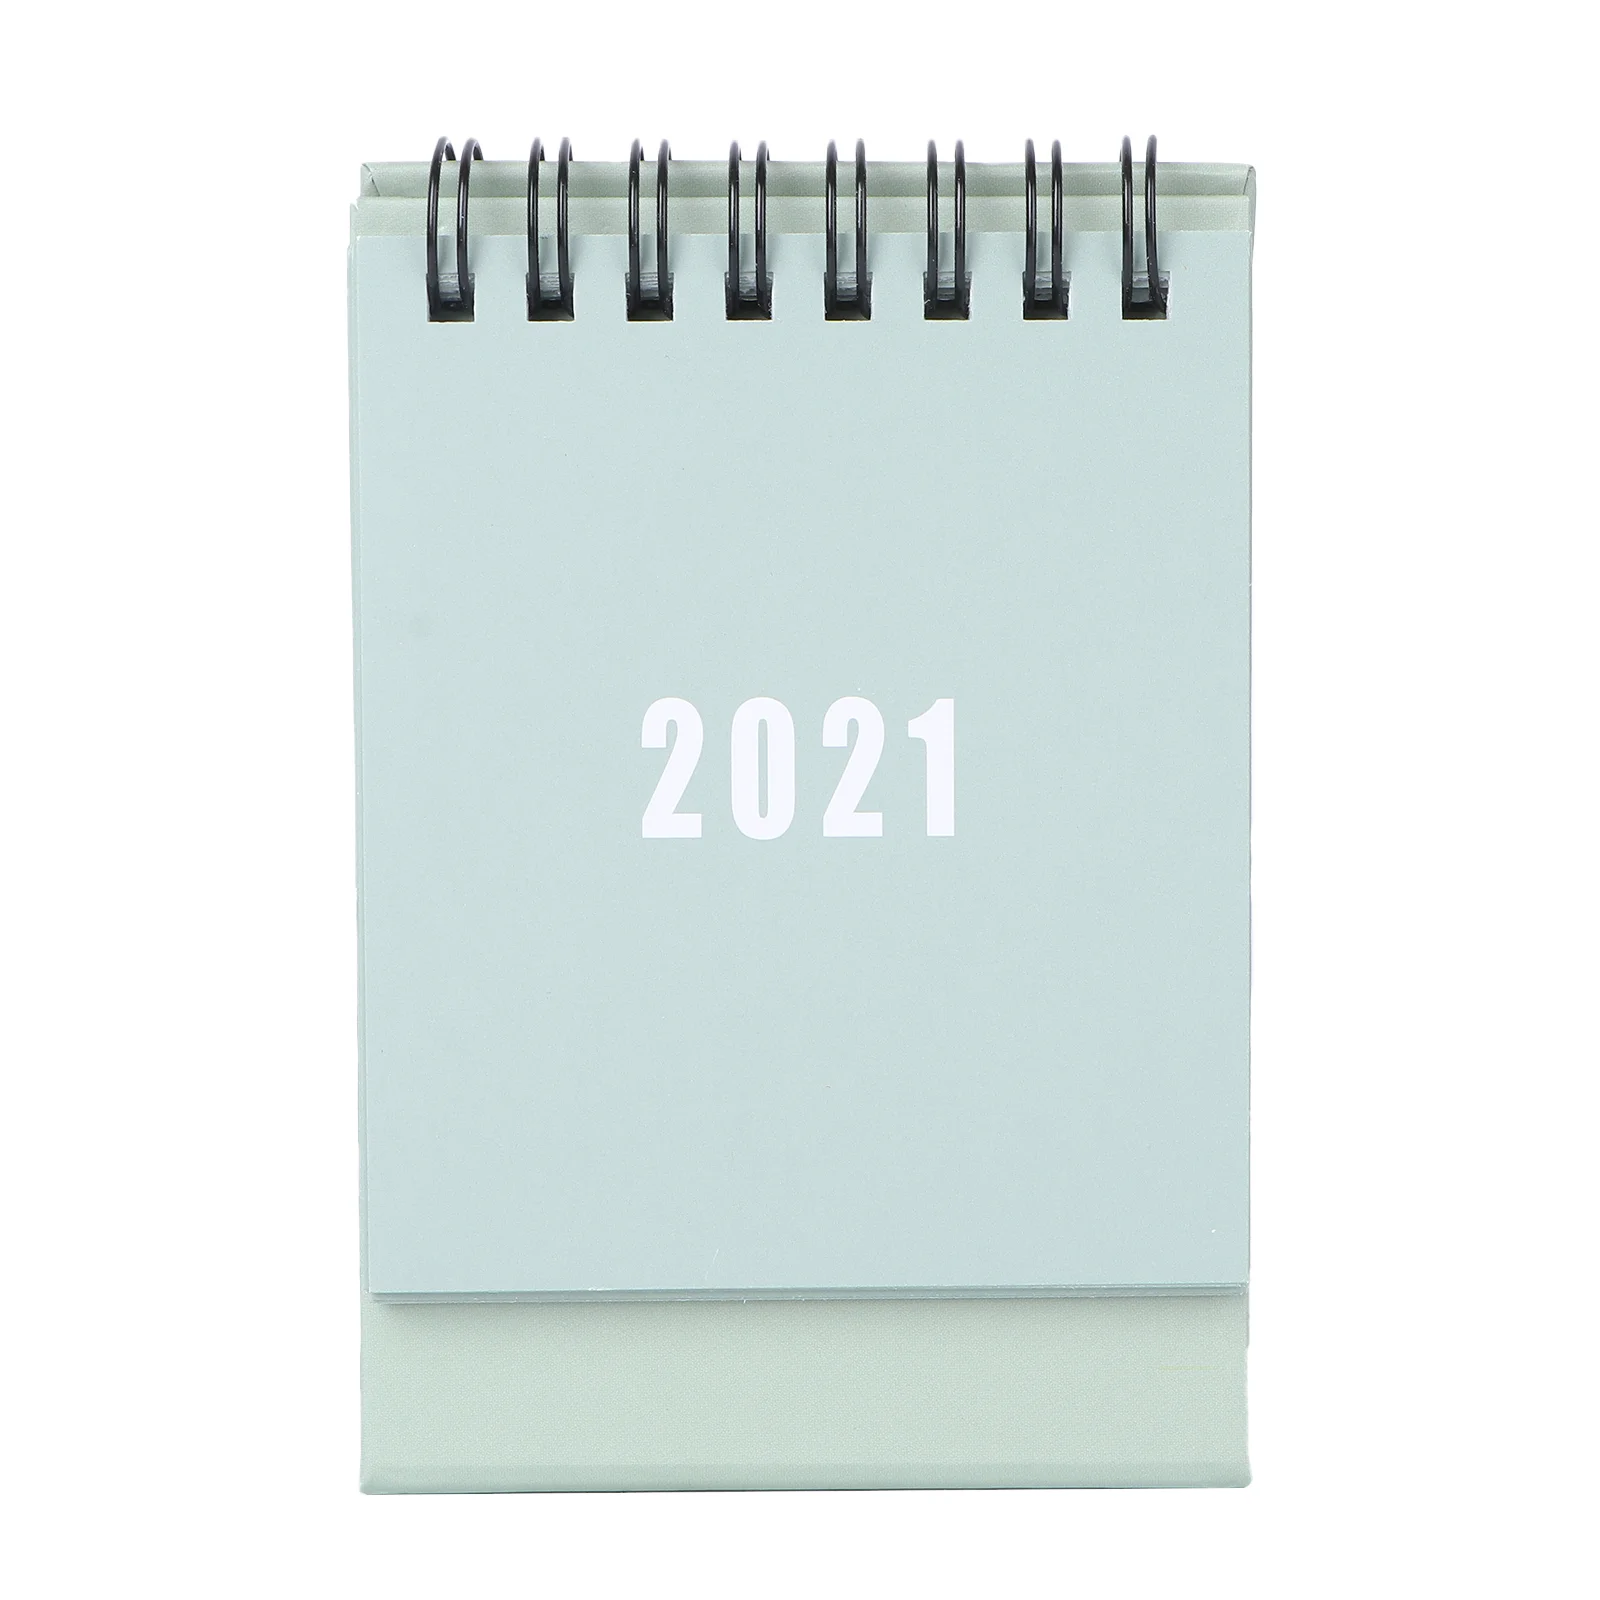 2021 креативный календарь для записей, ежемесячный календарь для работы, календарь для рабочего стола 2020, календарь для настольного ПК, мини ежемесячный календарь, настенный ноутбук